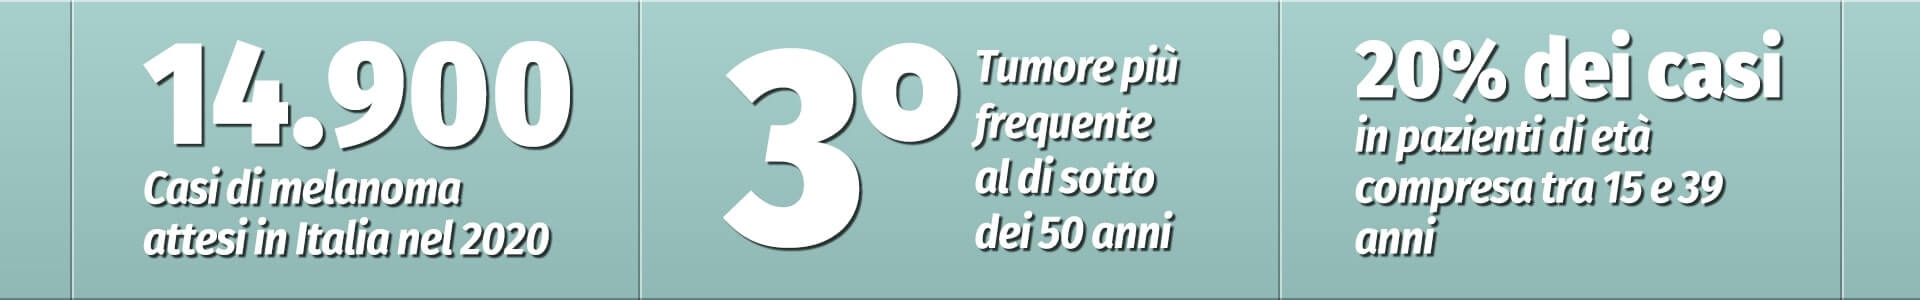 Casi di melanoma in Italia